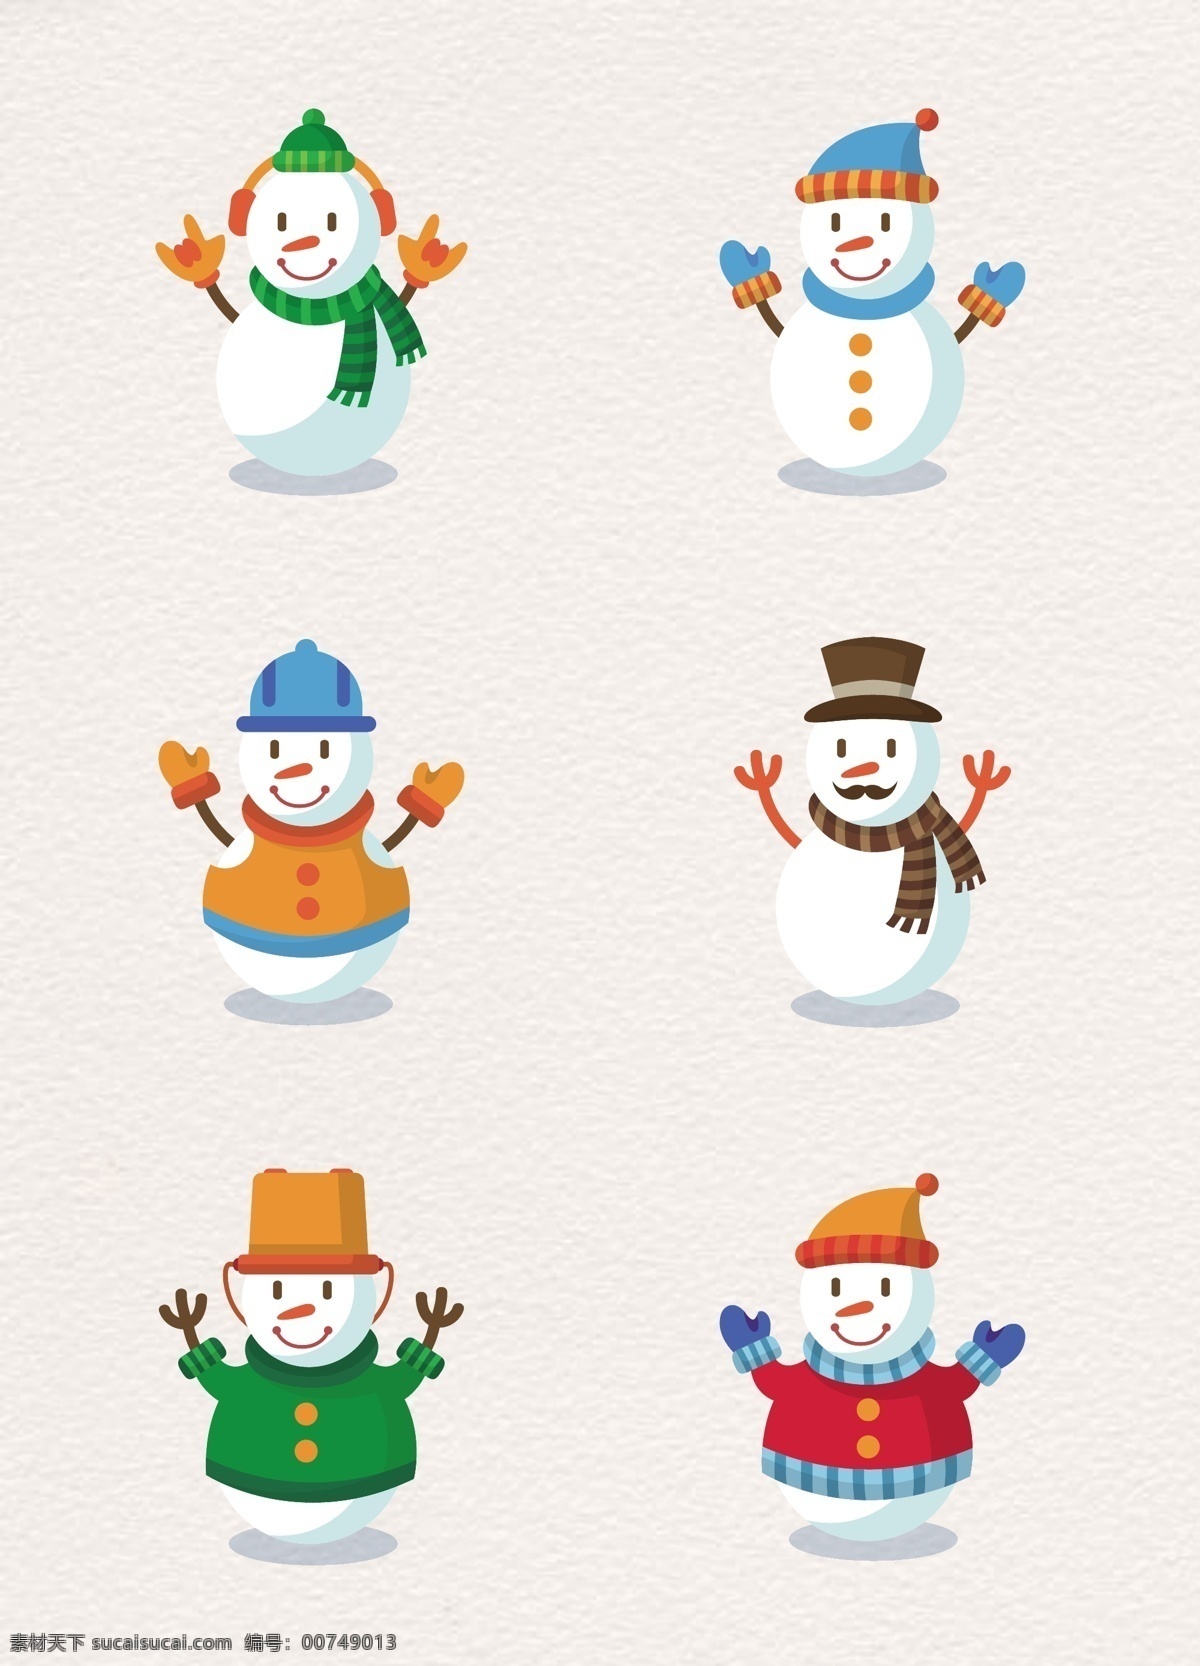 彩色 可爱 冬季 雪人 卡通 矢量图 圣诞节 手绘